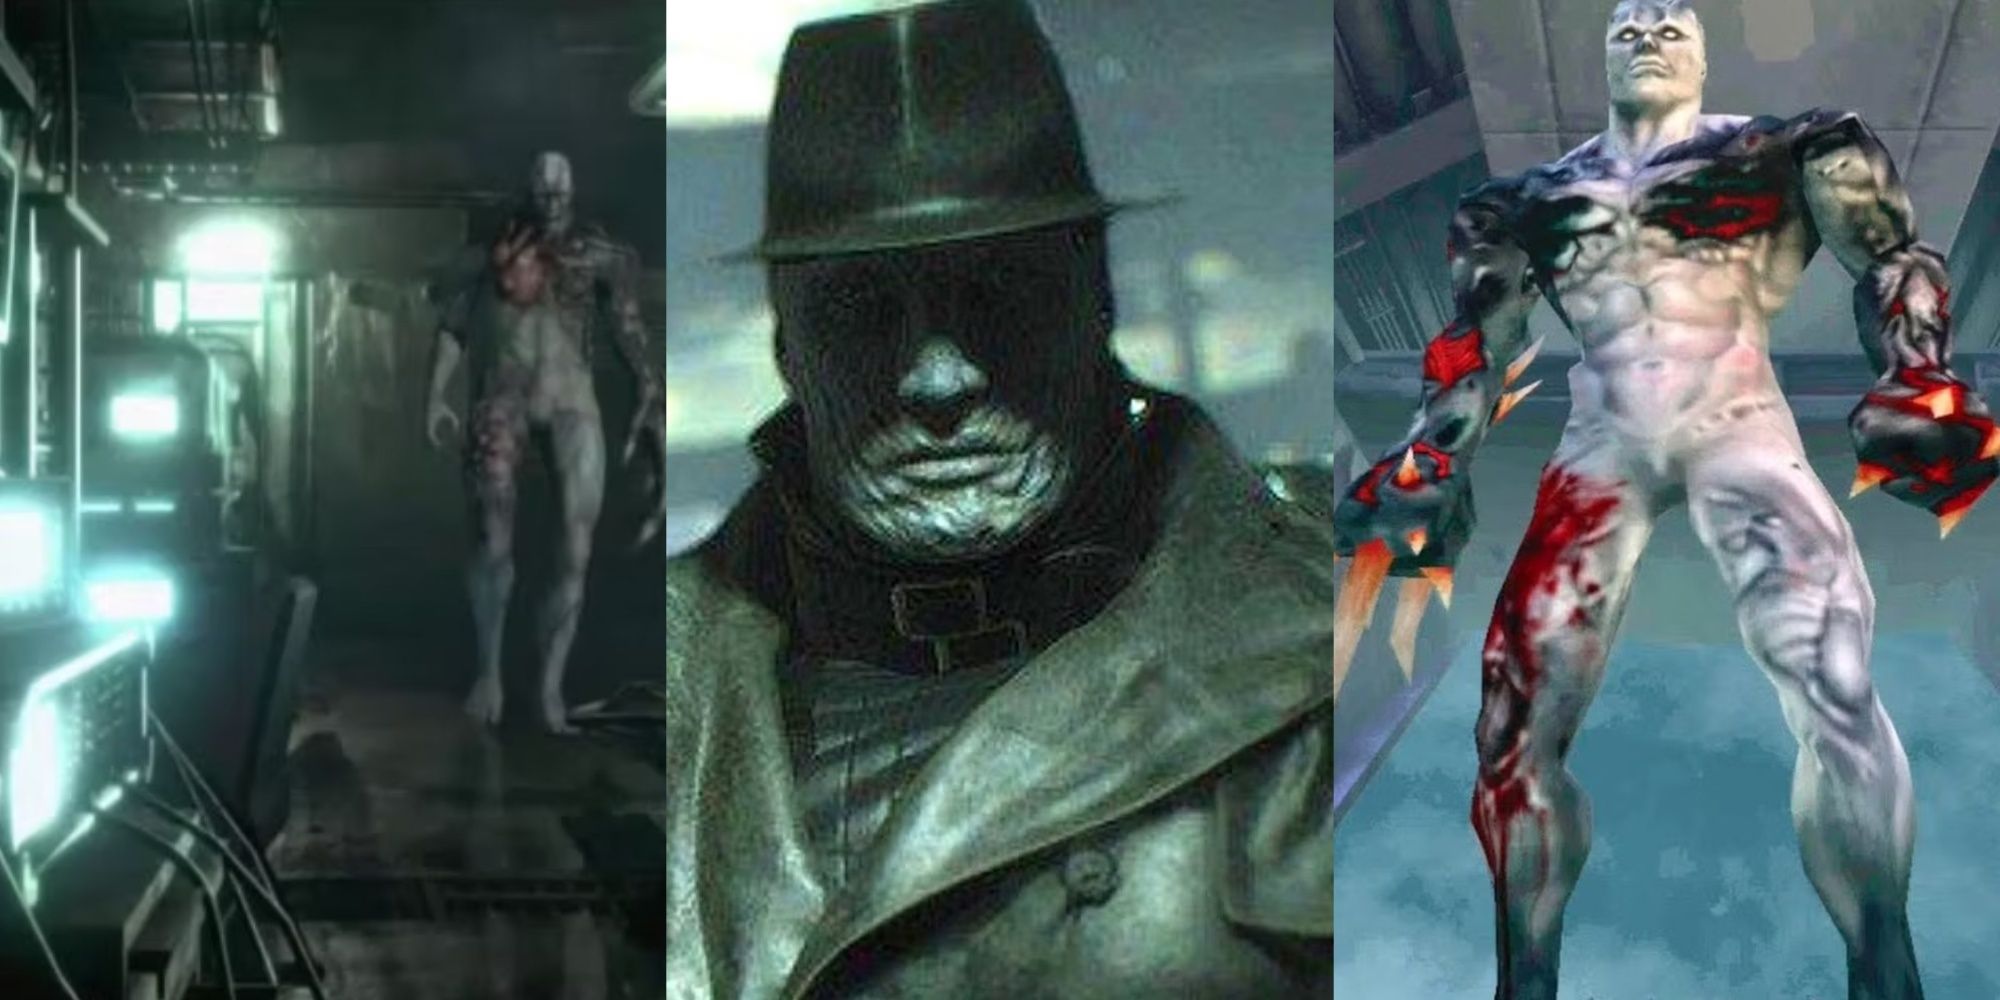 Resident Evil Tyrants, der T-002 aus dem ursprünglichen Resident Evil, eine Nahaufnahme von Mr. X aus Resident Evil 2 Remake und der Tyrant aus Code Veronica, von links nach rechts